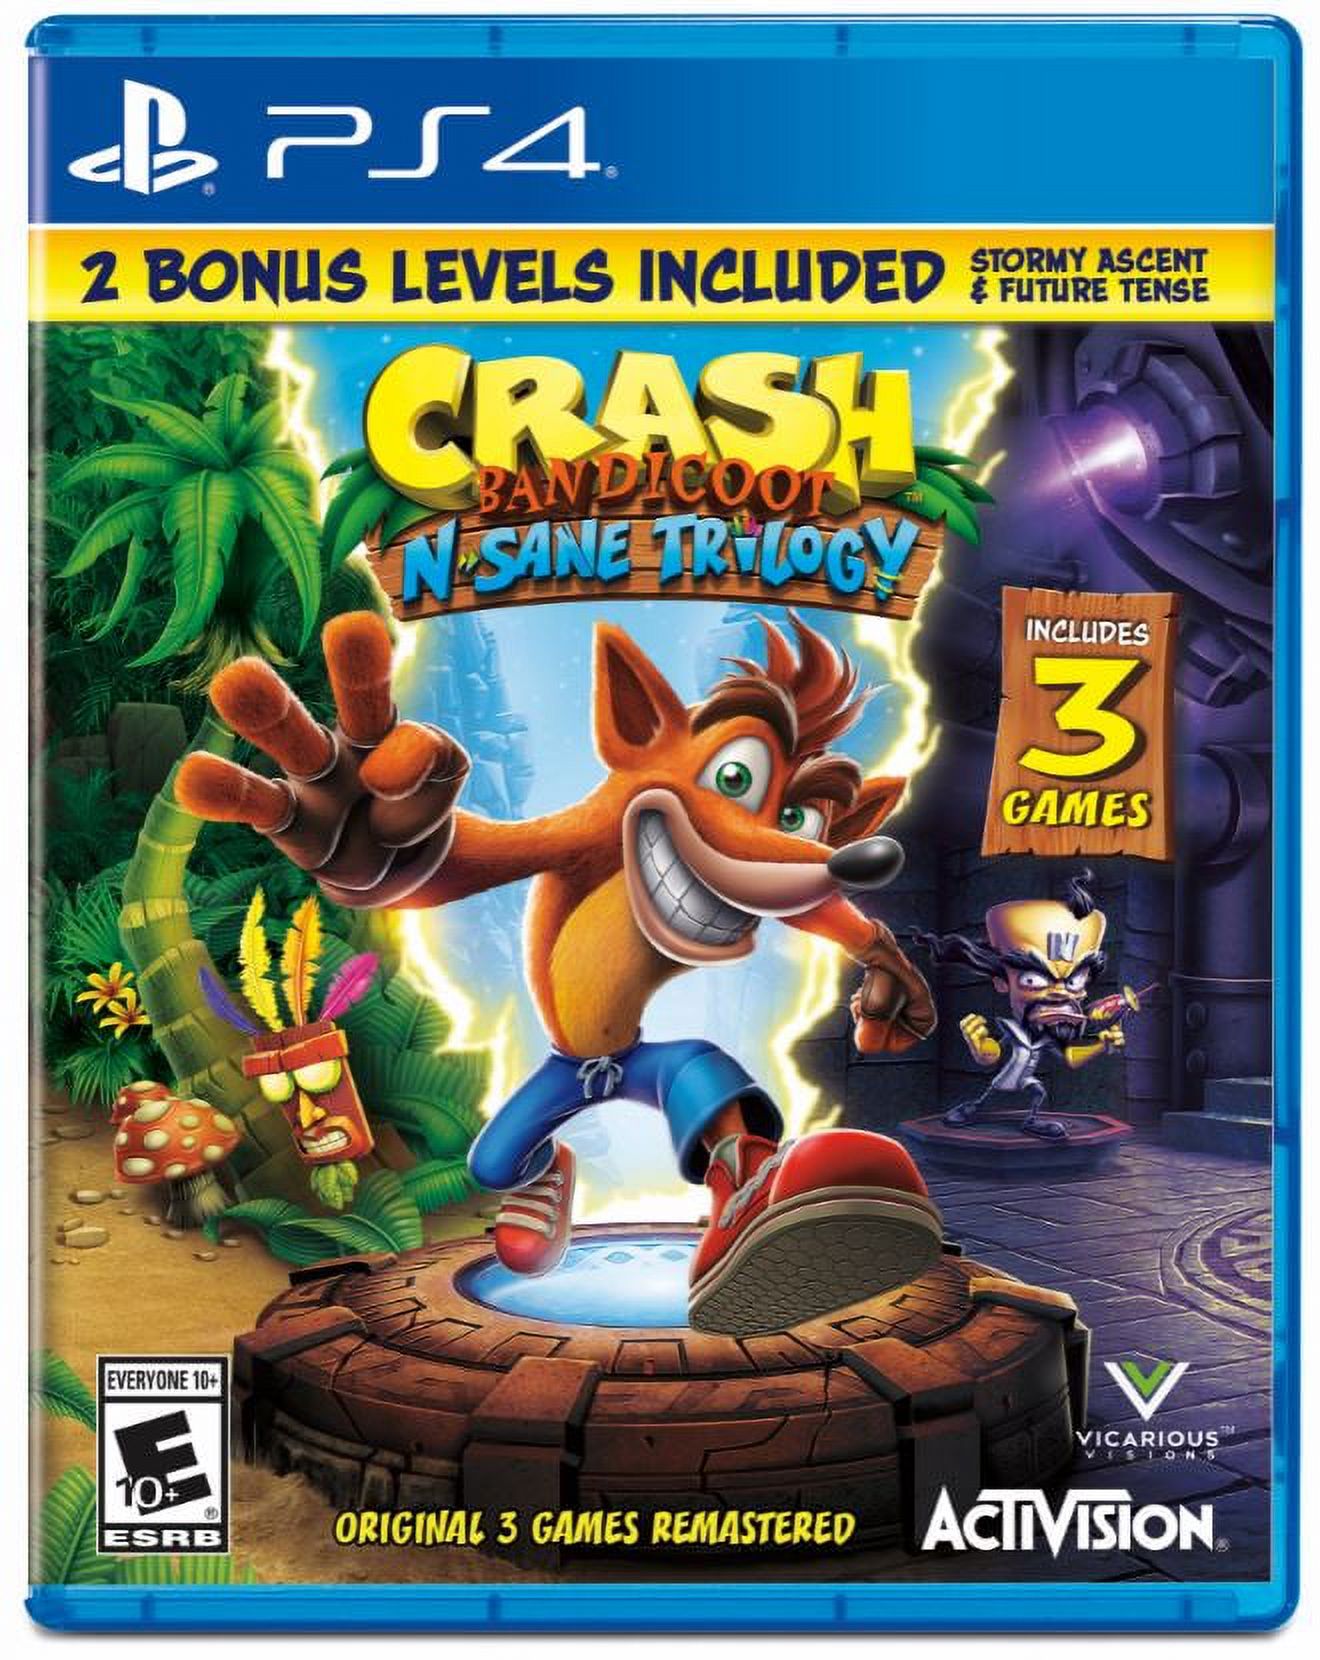 Crash N. Sane Trilogy, Activision, PlayStation 4, 047875880801 - image 1 of 13